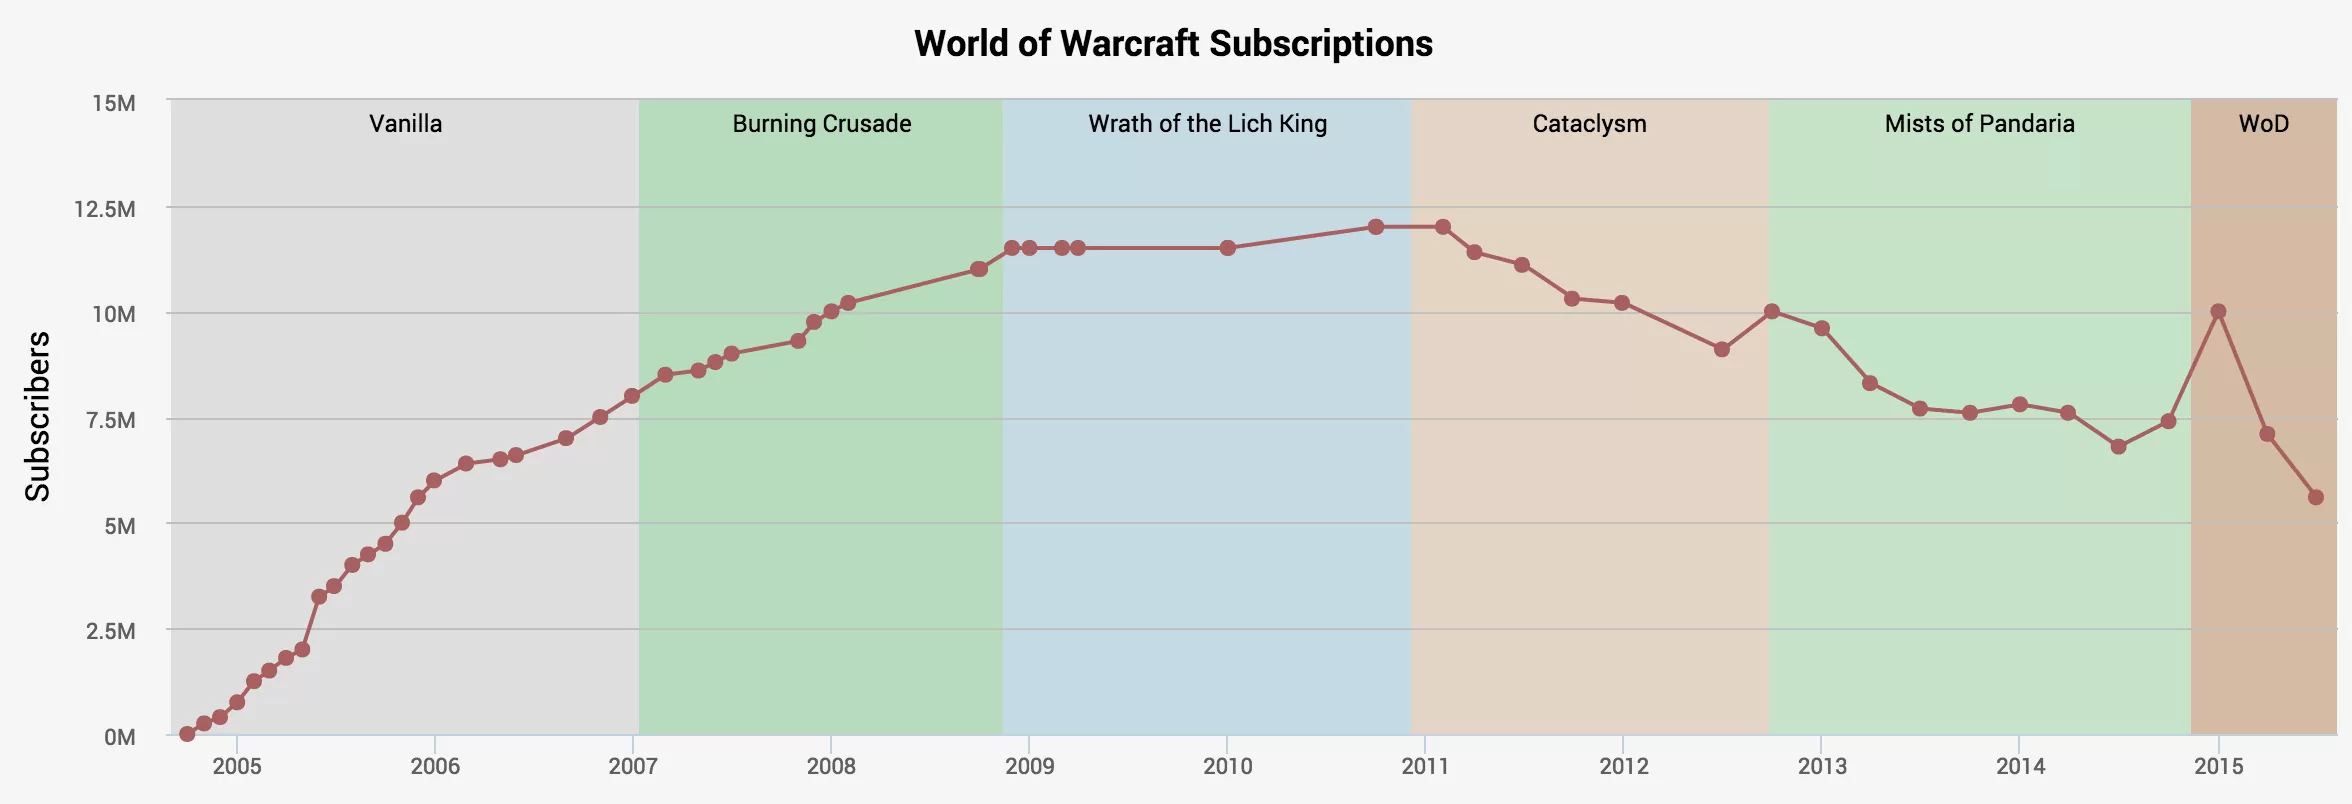 Blizzard acaba de darnos una pista de cuántos suscriptores de World of Warcraft quedan (y todavía son millones)